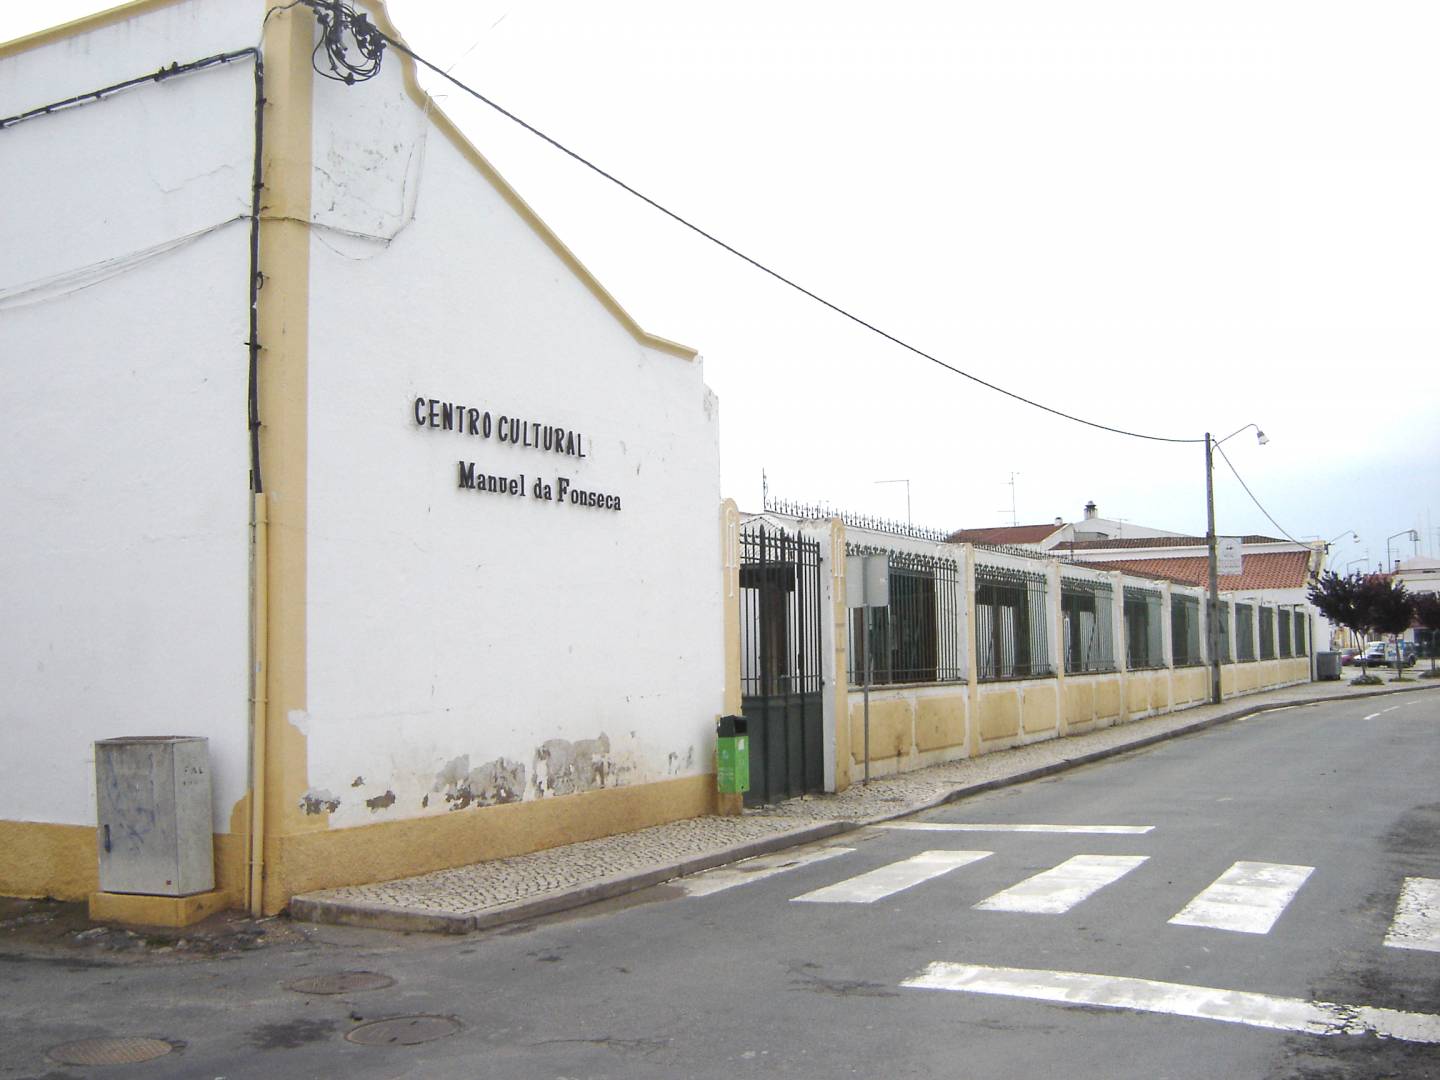 Centro Cultural Manuel da Fonseca